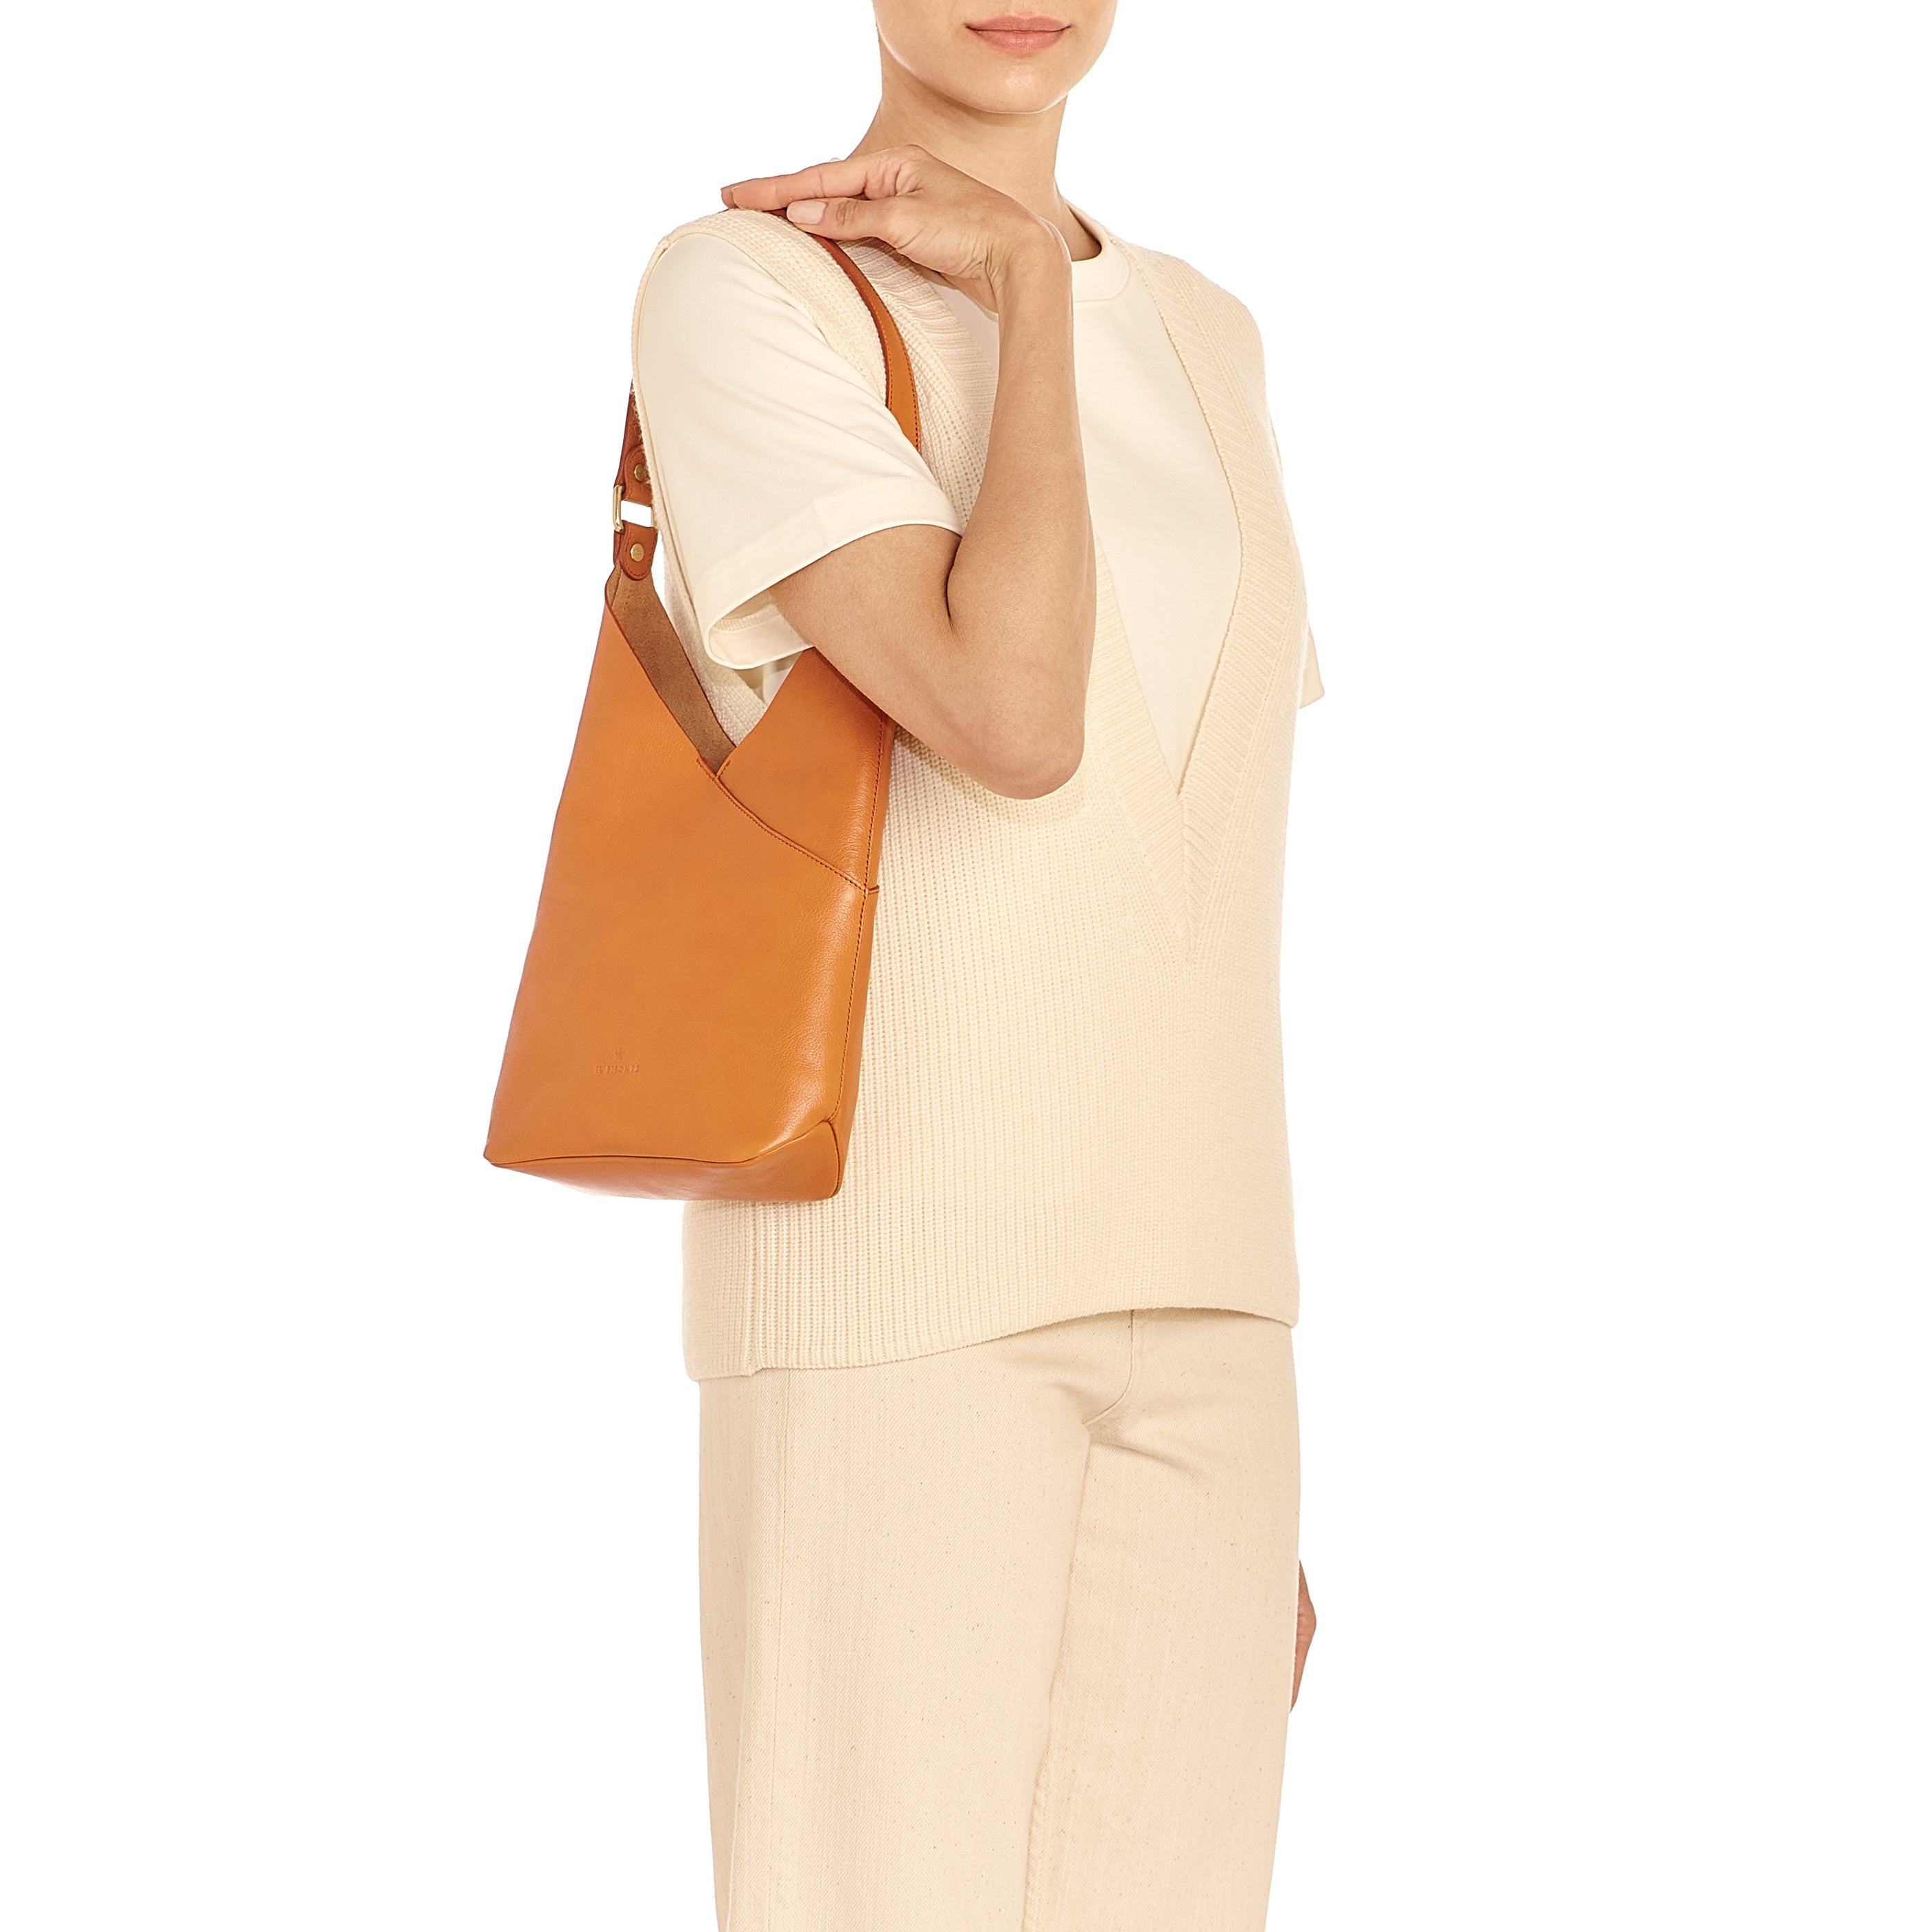 Malibu | Women's shoulder bag in leather color caramel